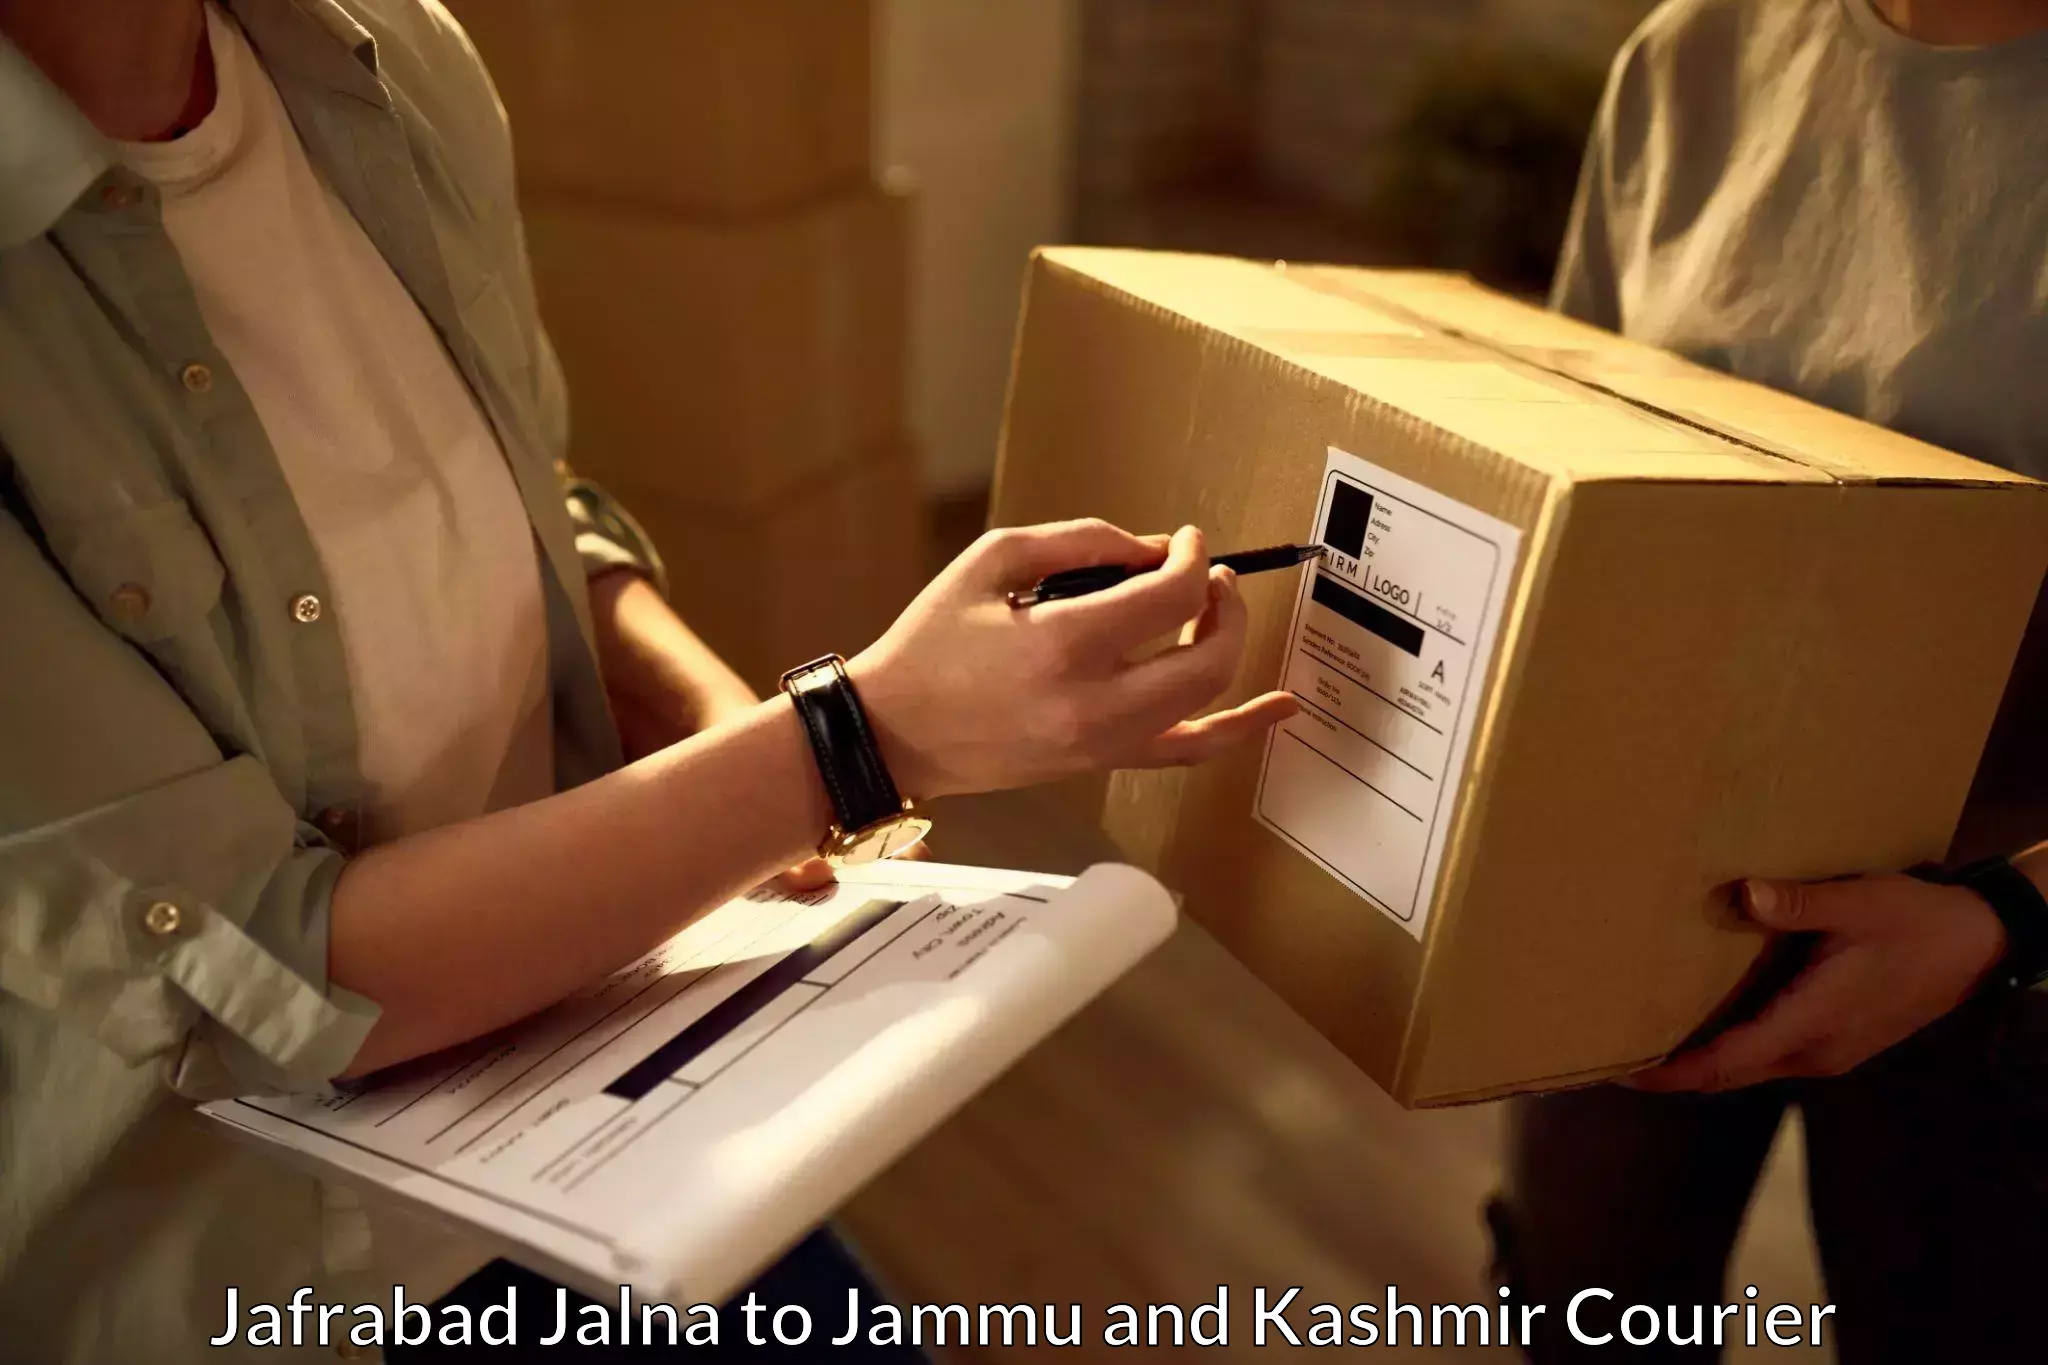 Efficient parcel service Jafrabad Jalna to IIT Jammu